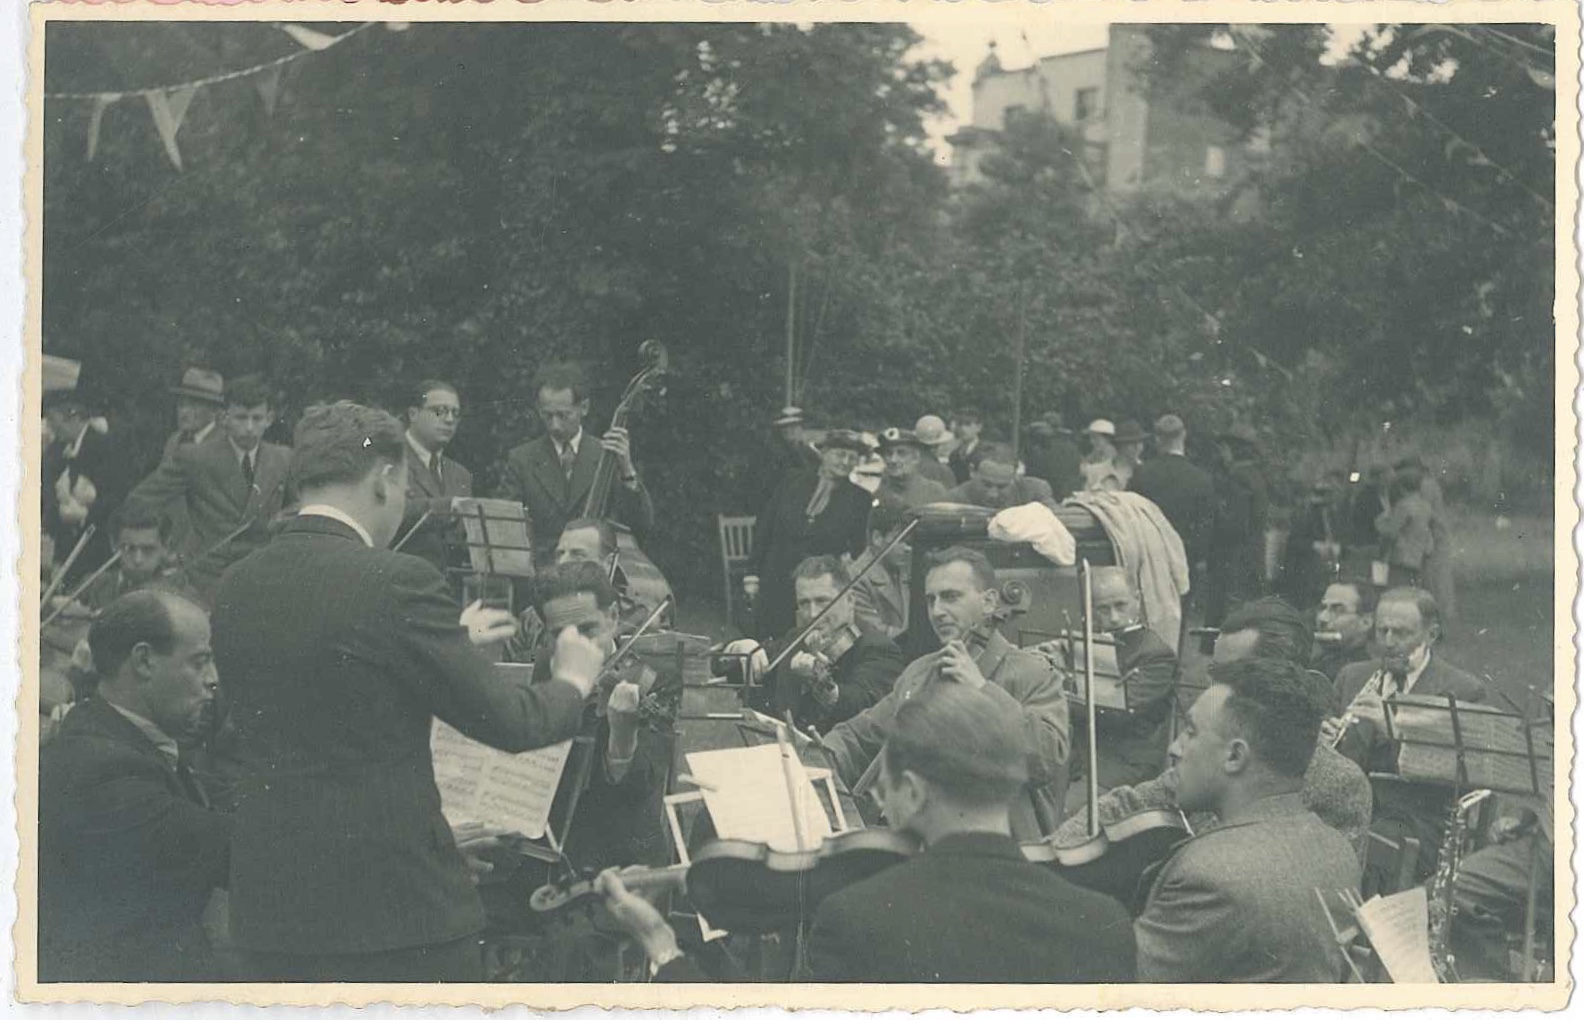 Kitchener camp, Richborough, Franz Schanzer, With cello, Centre right